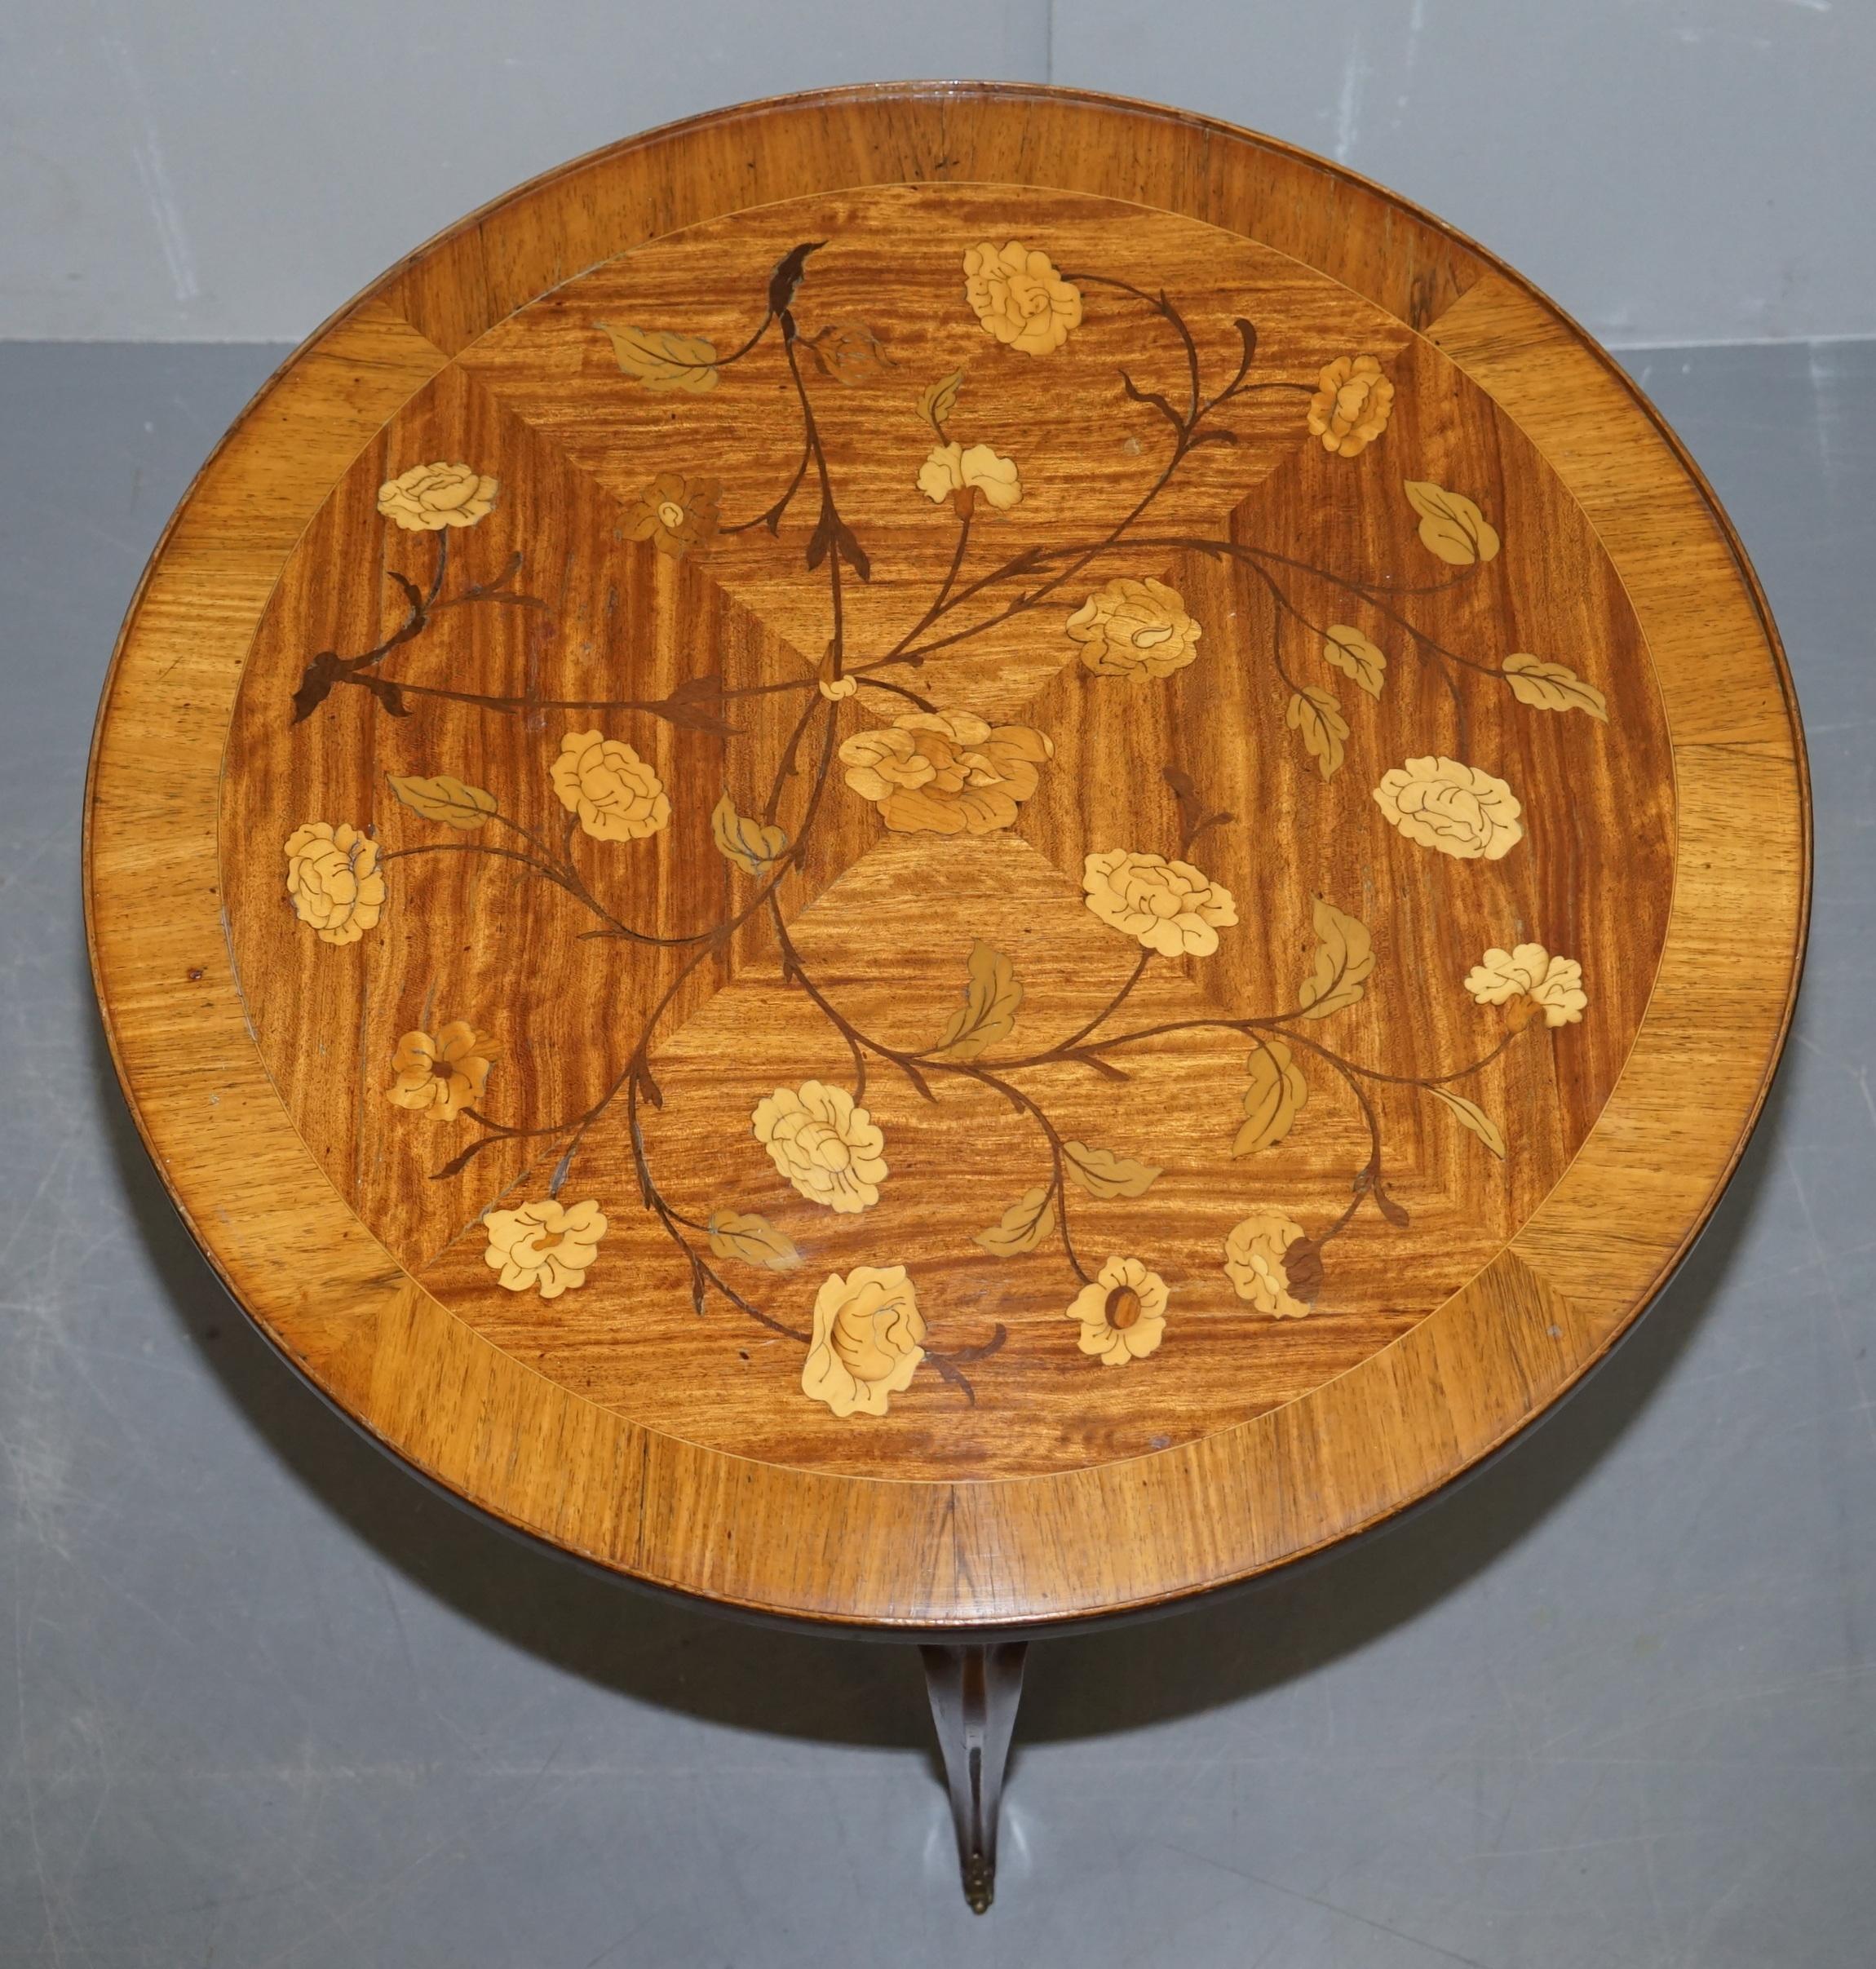 Nous avons le plaisir d'offrir à la vente cette sublime table d'appoint en bois fruitier, fabriquée à la main en Italie vers 1900, avec des montures en bronze

Une table d'appoint bien faite et décorative, achetée à Genève en Italie, elle date de